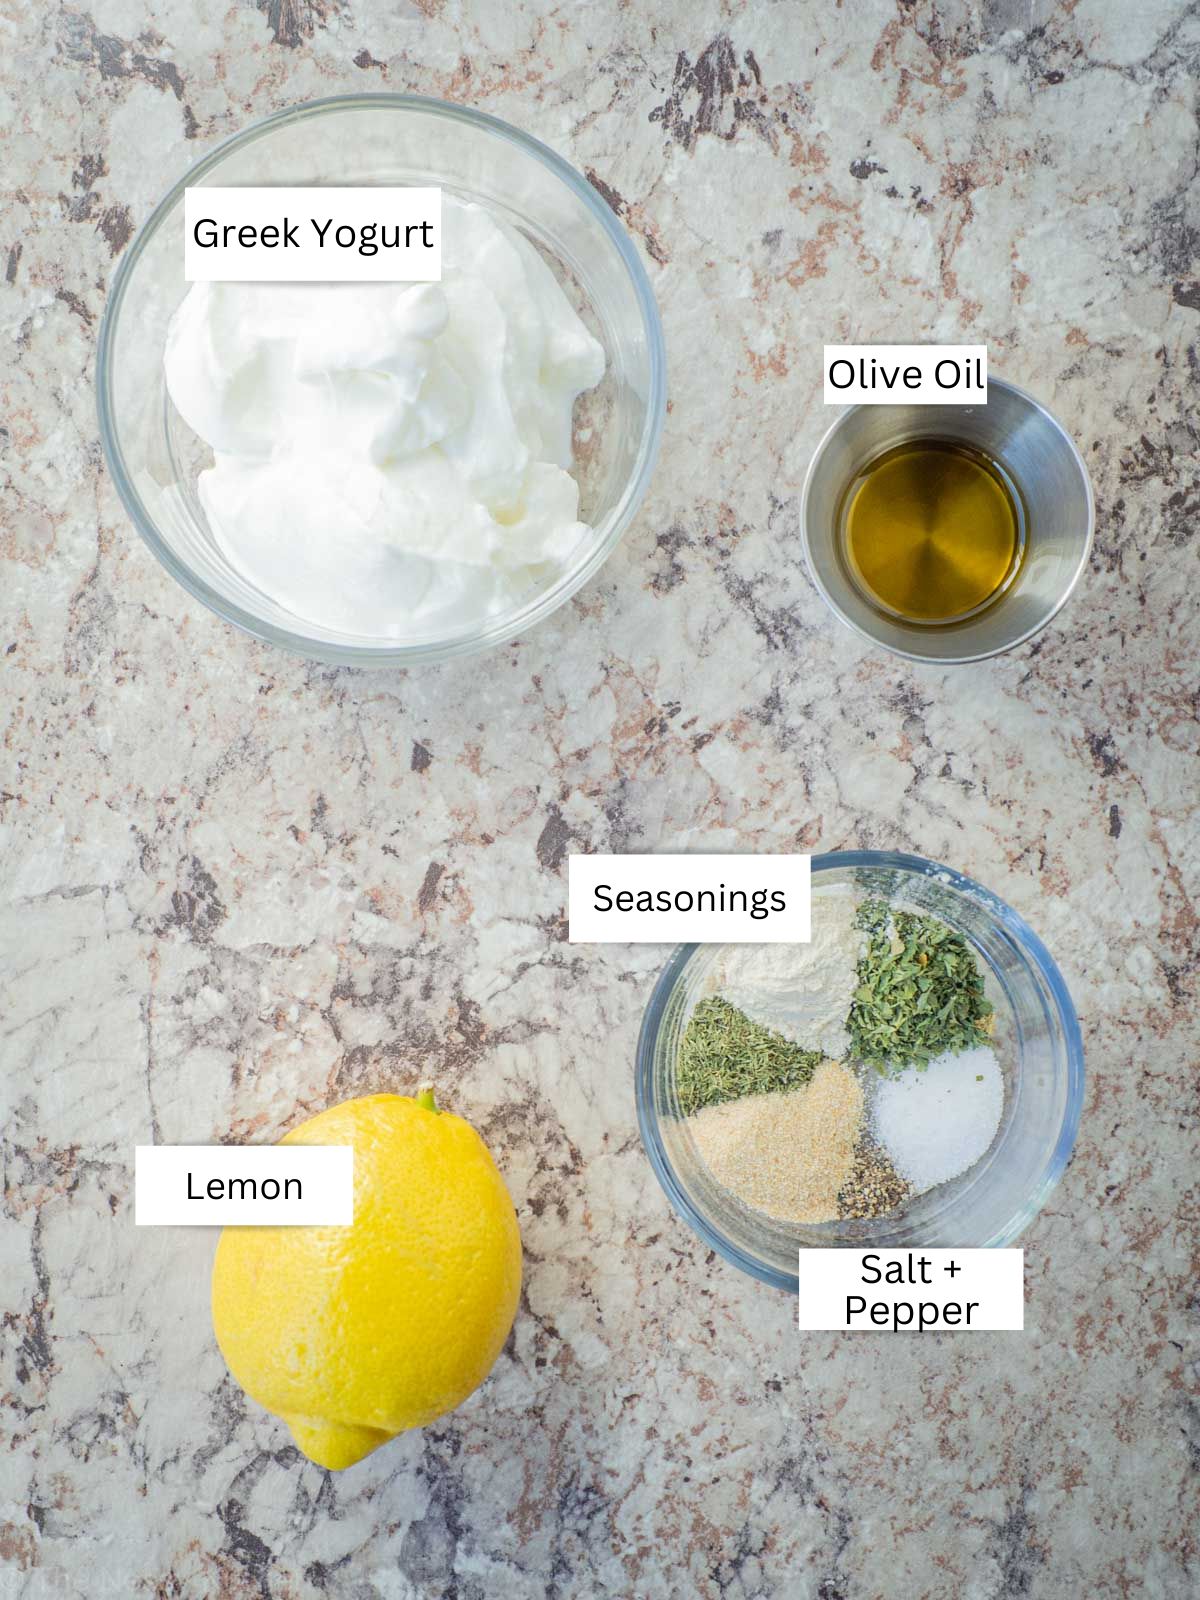 Ingredients for Greek yogurt ranch dip.